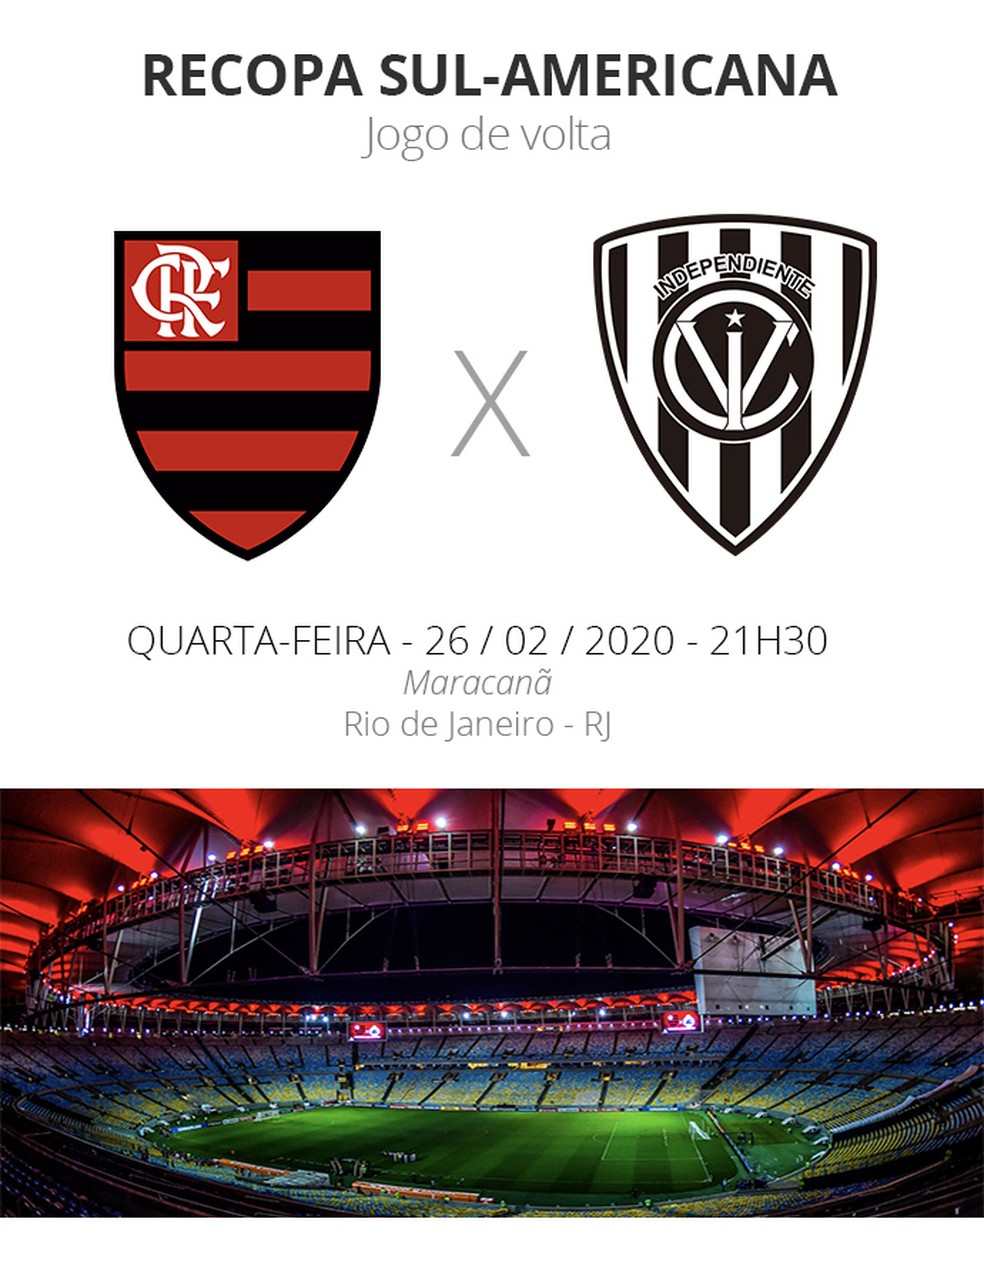 ONDE ESTÁ PASSANDO O JOGO DO FLAMENGO? Assista Flamengo x Independiente del  Valle AO VIVO E ONLINE GRÁTIS